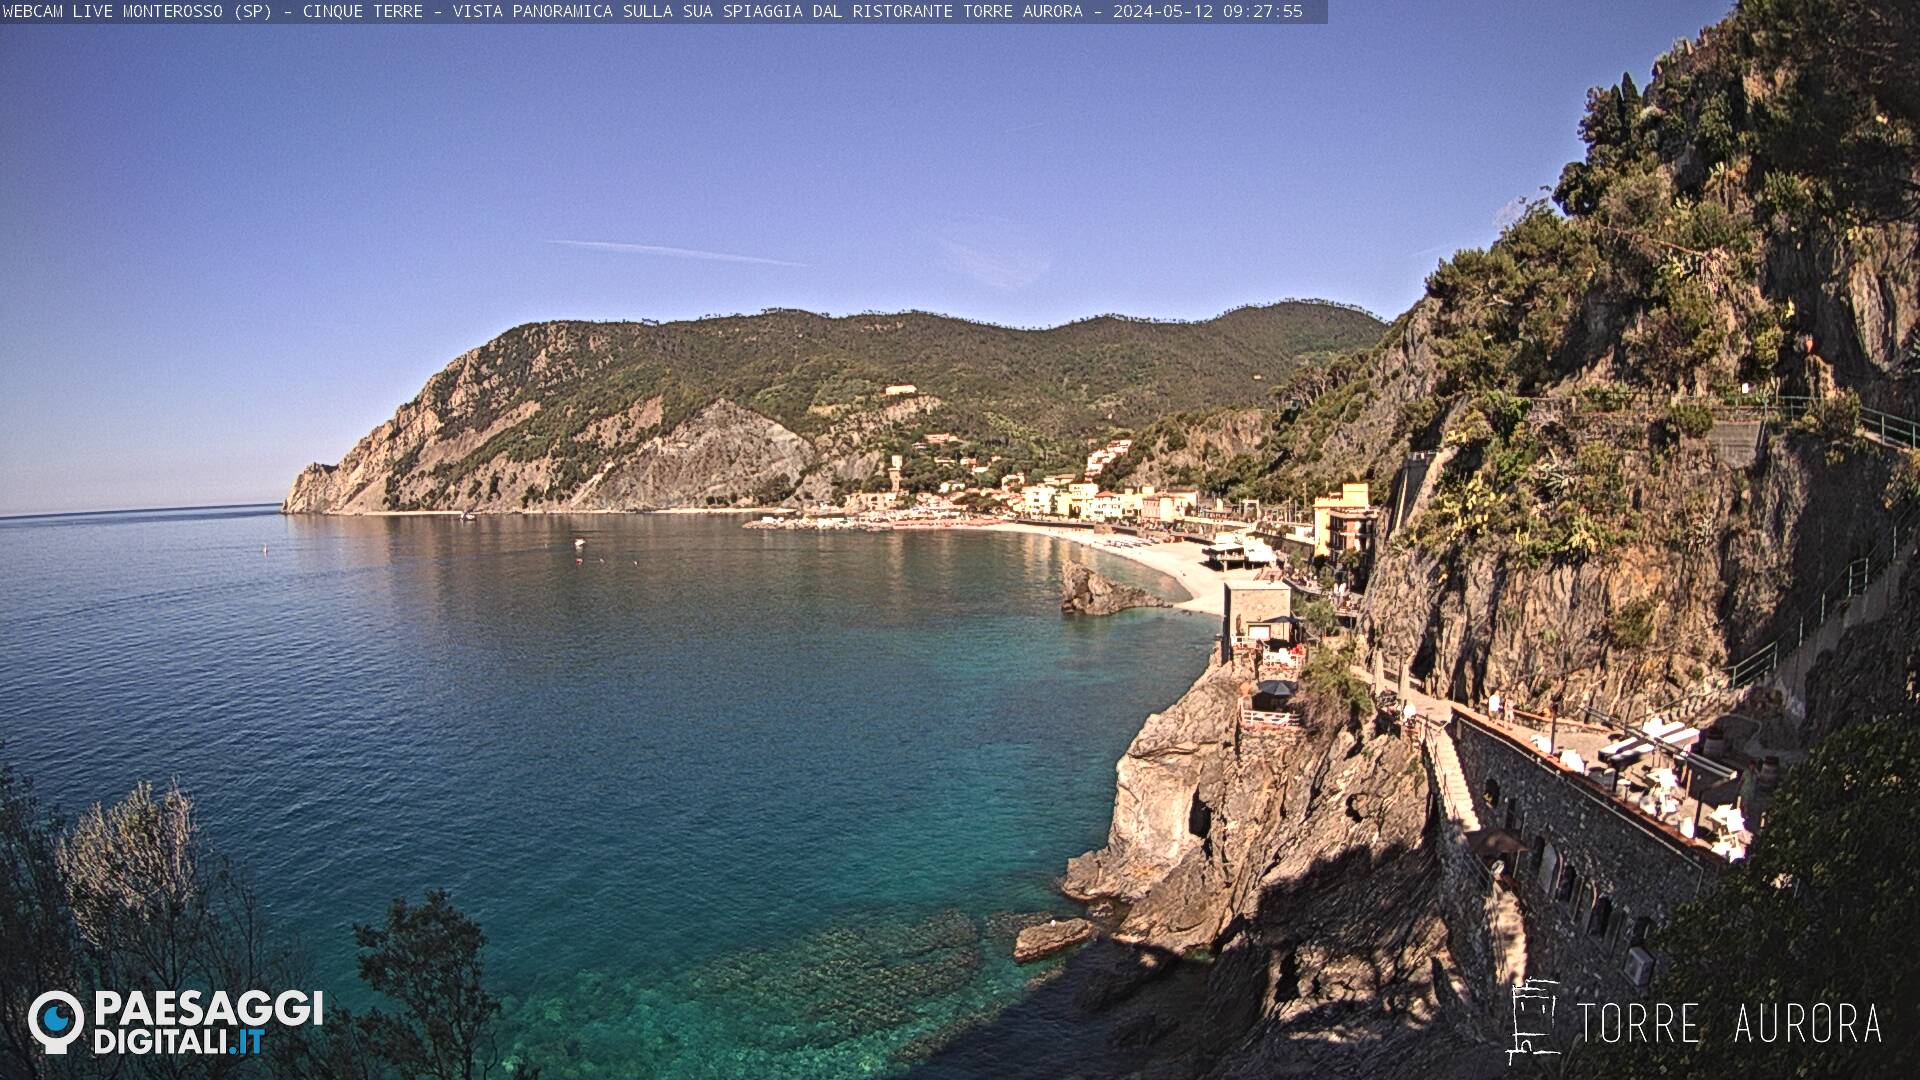 Monterosso al Mare (Cinque Terre) Do. 09:28